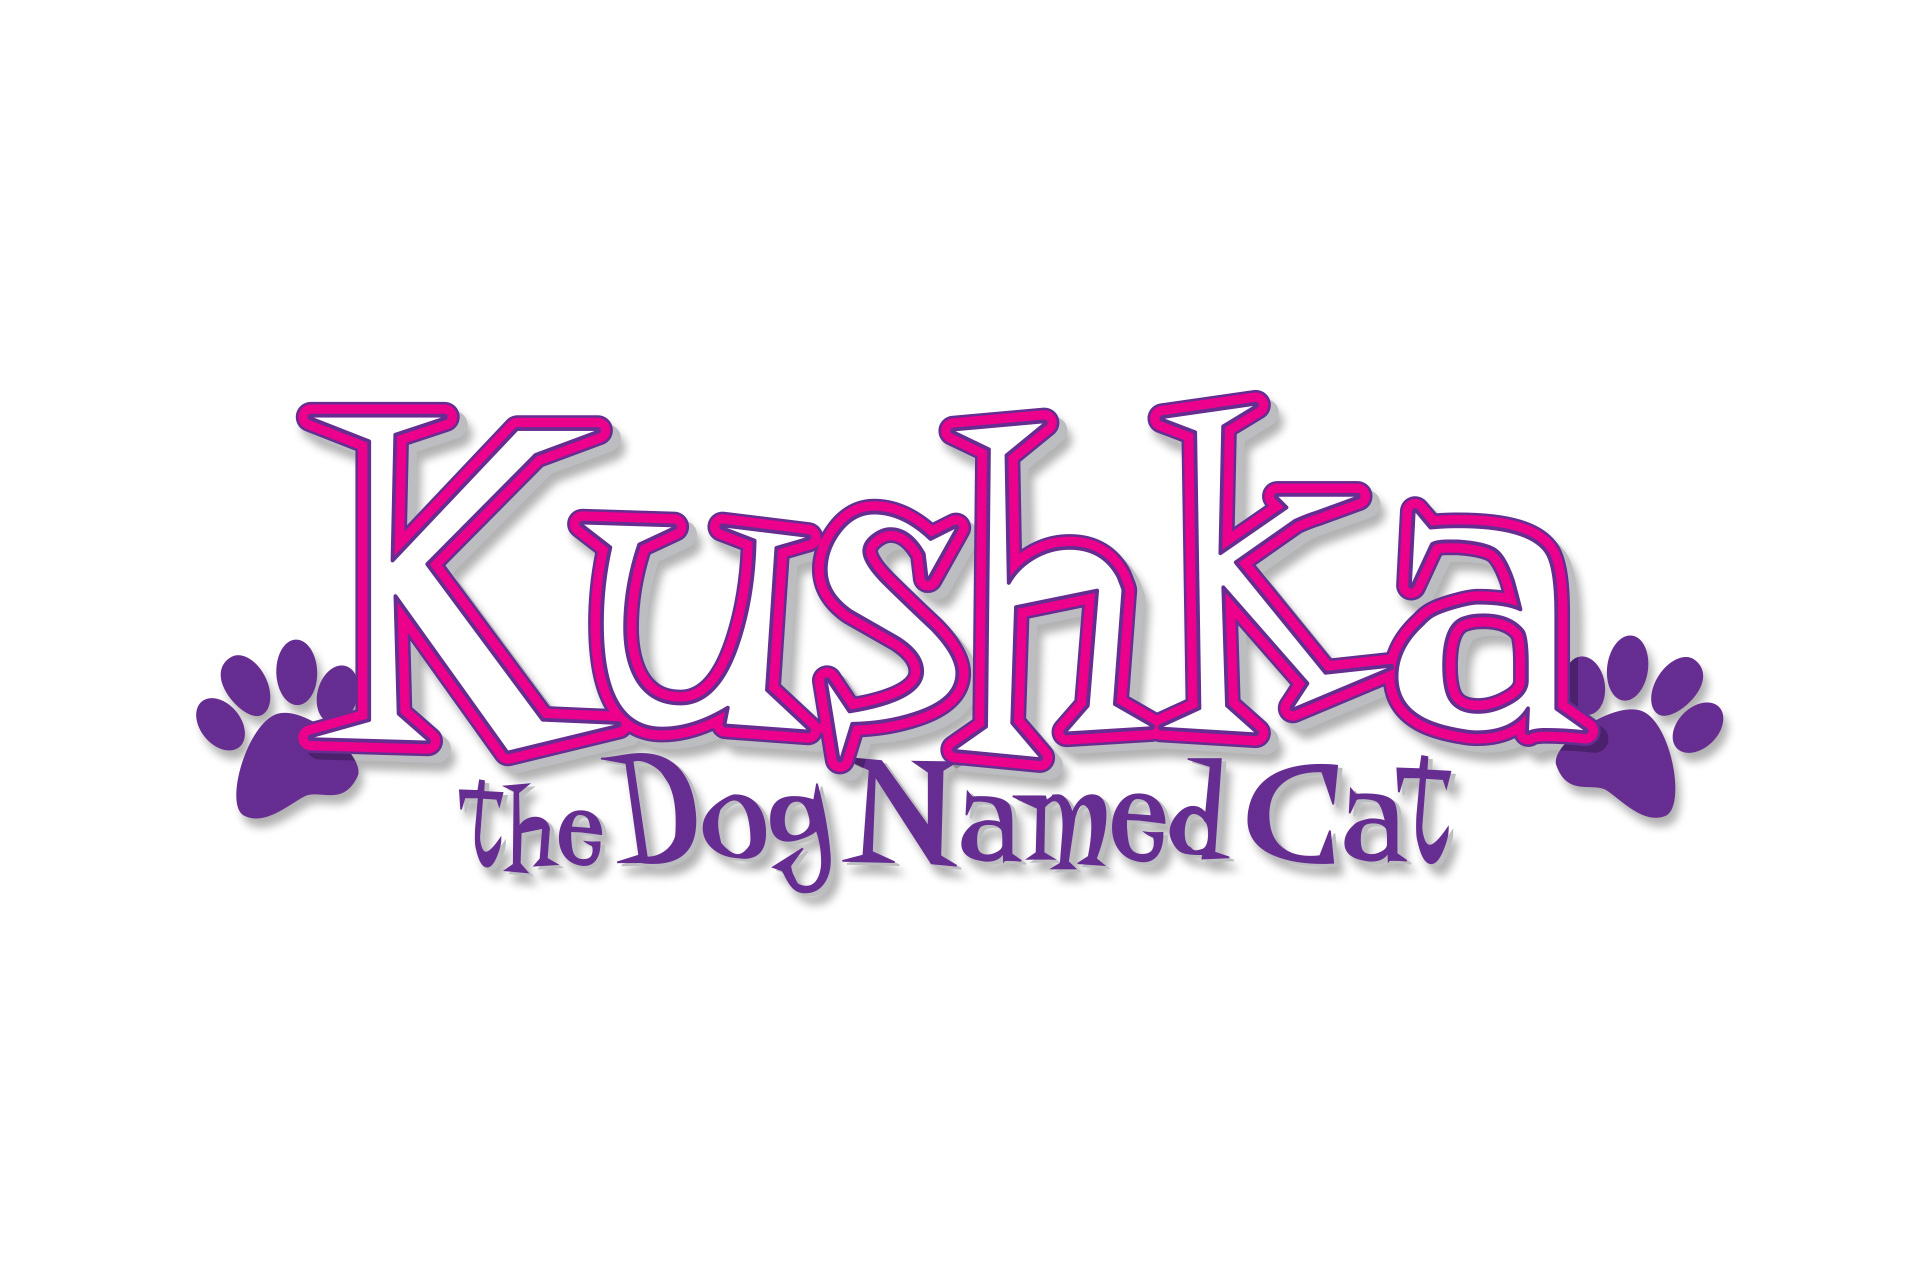 Kushka The Dog Named Cat